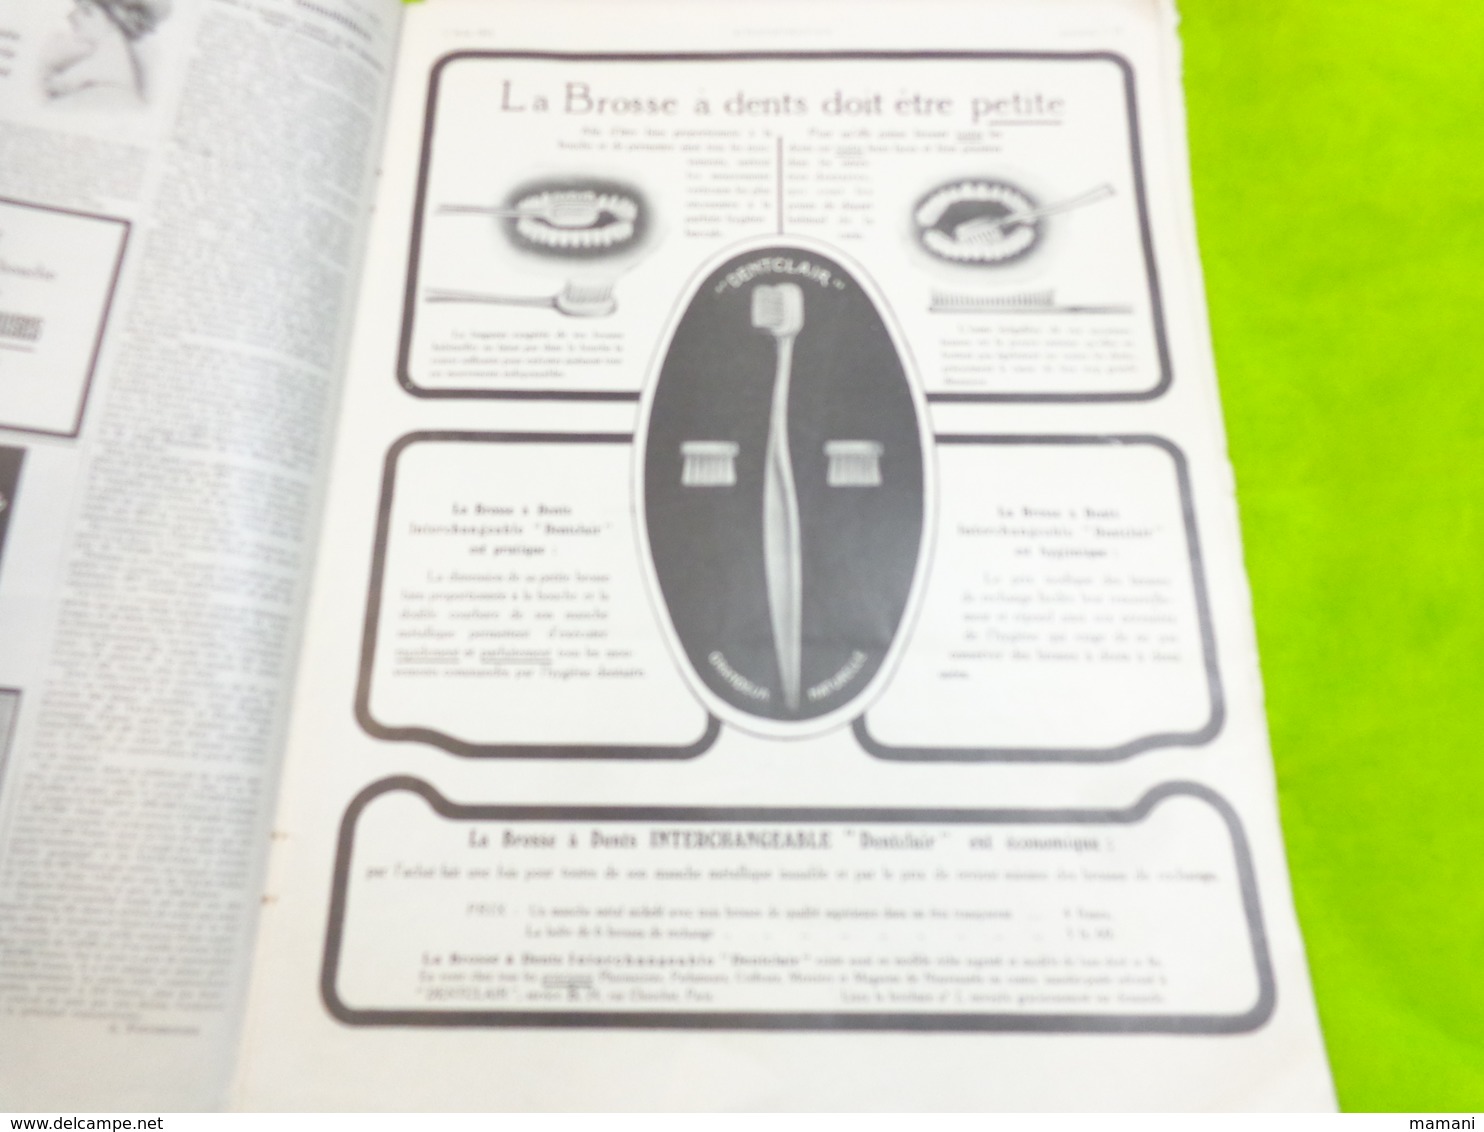 l'illustration 9 mars 1912 n°3602-pub nleriot-de dion bouton-automobiles brasier-unic-corsets ND etc...